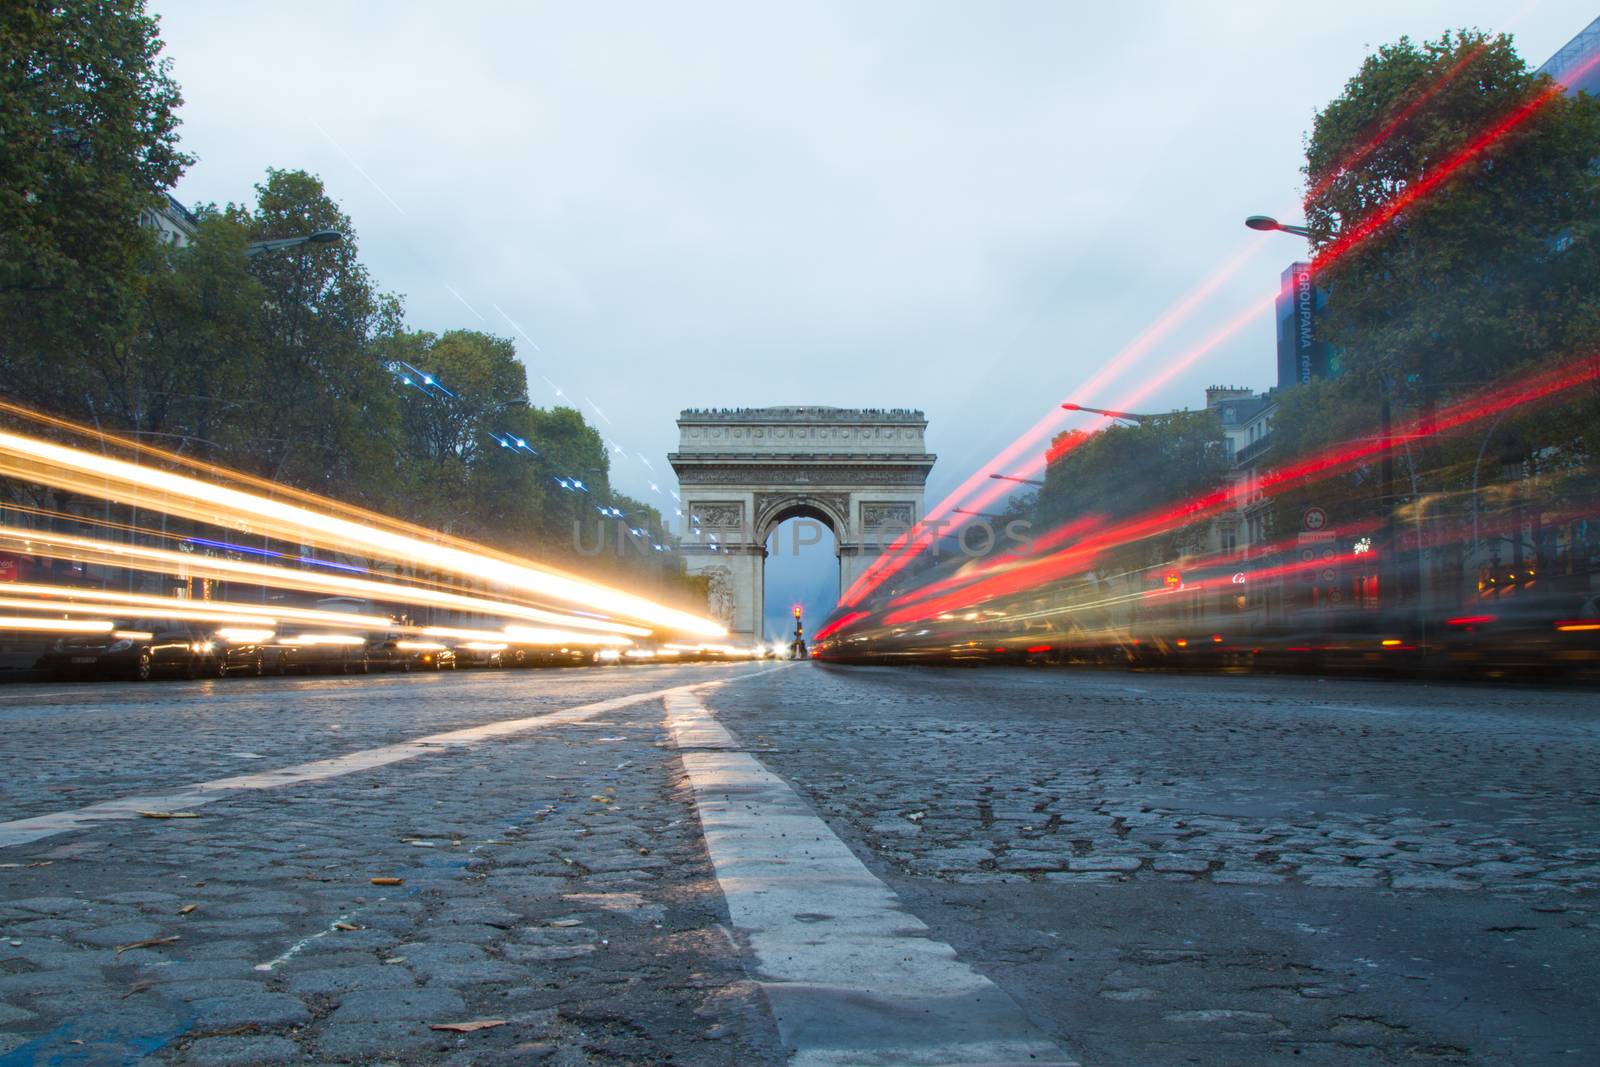 L'Arc de Triomphe in Paris, France